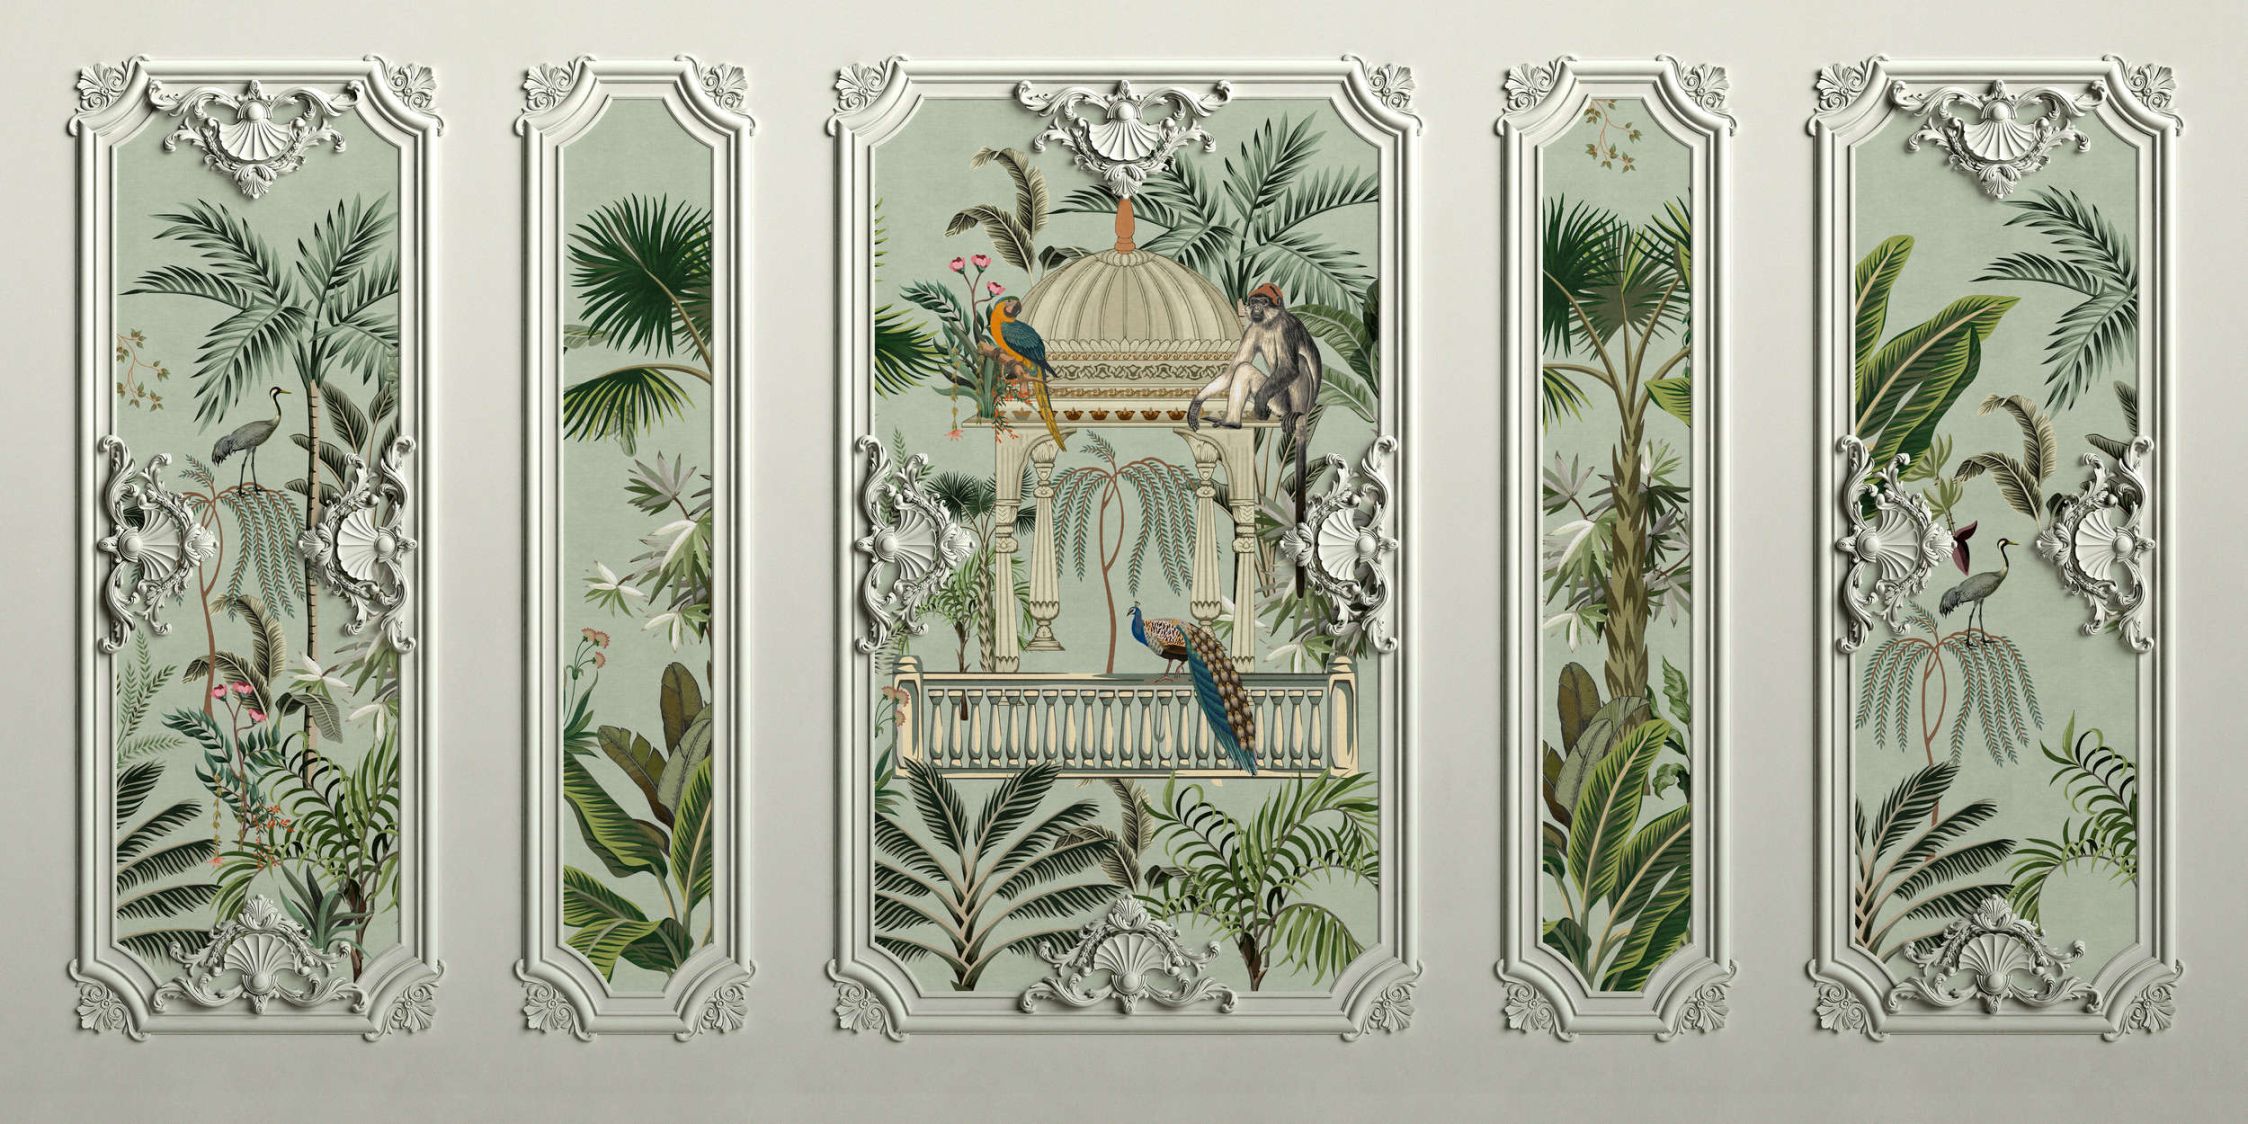             papier peint en papier panoramique »darjeeling« - aspect cadre stucco avec oiseaux & palmiers avec structure en lin en arrière-plan - intissé lisse, légèrement nacré
        